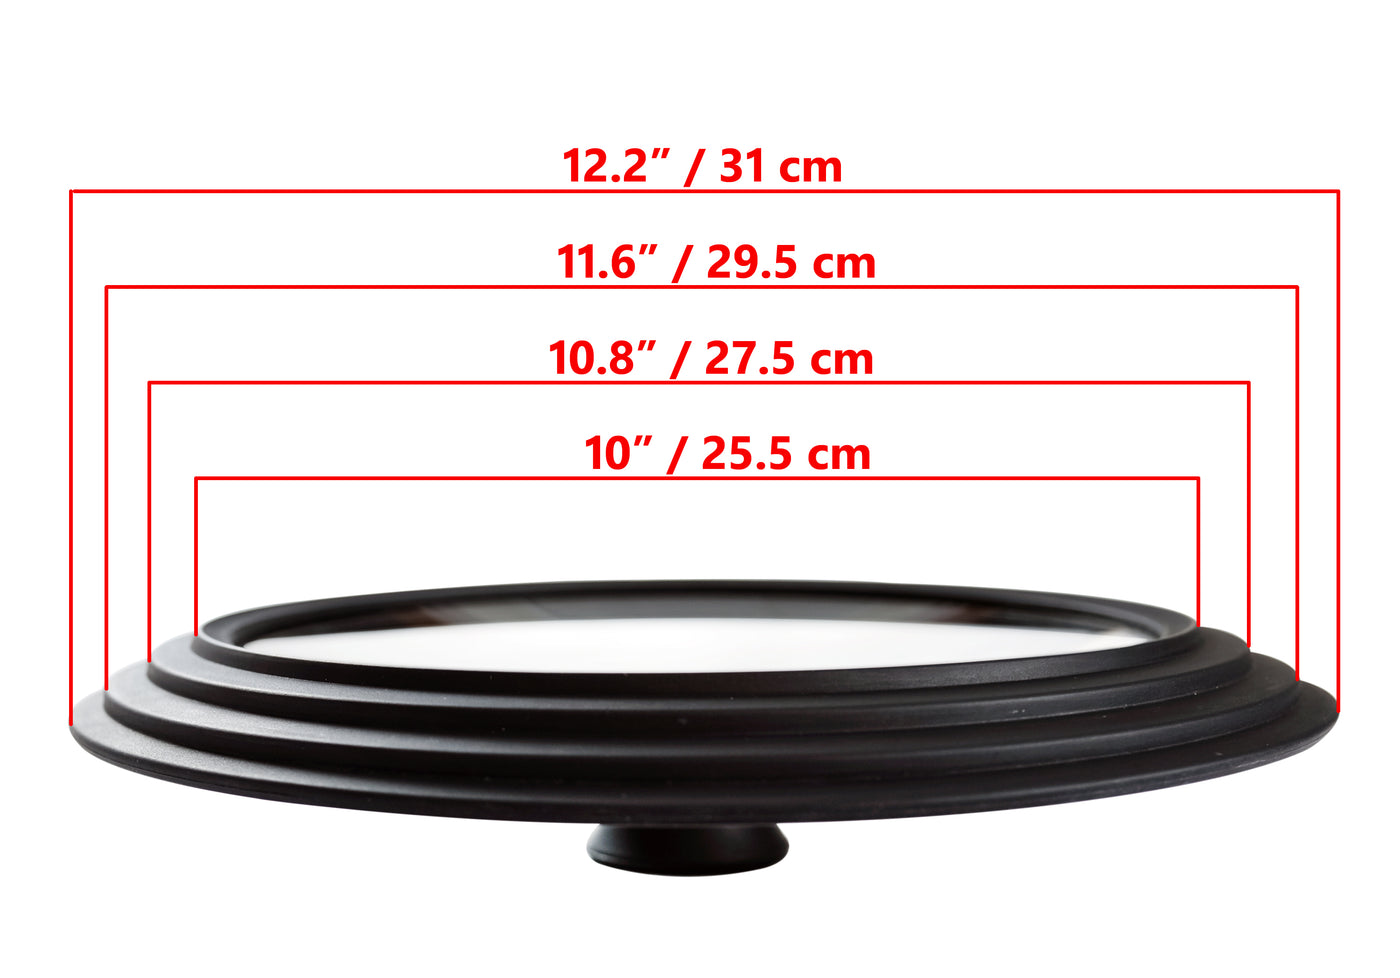 Coperchio in vetro universale - Multisize 10" / 25,5 cm, 10,8" / 27,5 cm, 11,6" / 29,5 cm (bordi esterni 12,2" / 31 cm) per pentole e padelle, nero